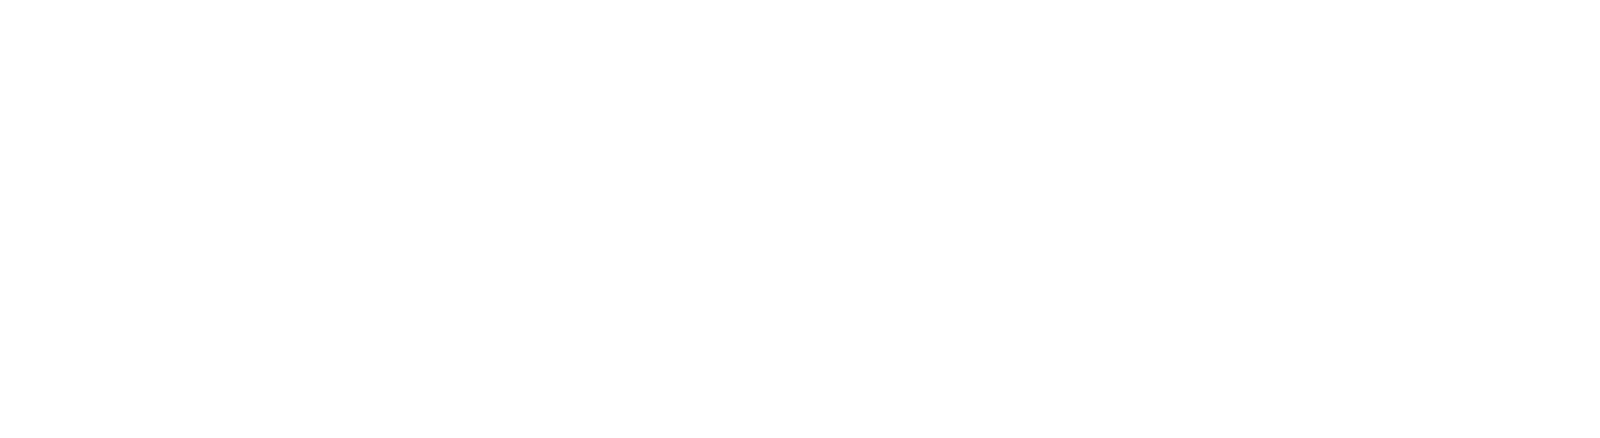 DiaStar Original